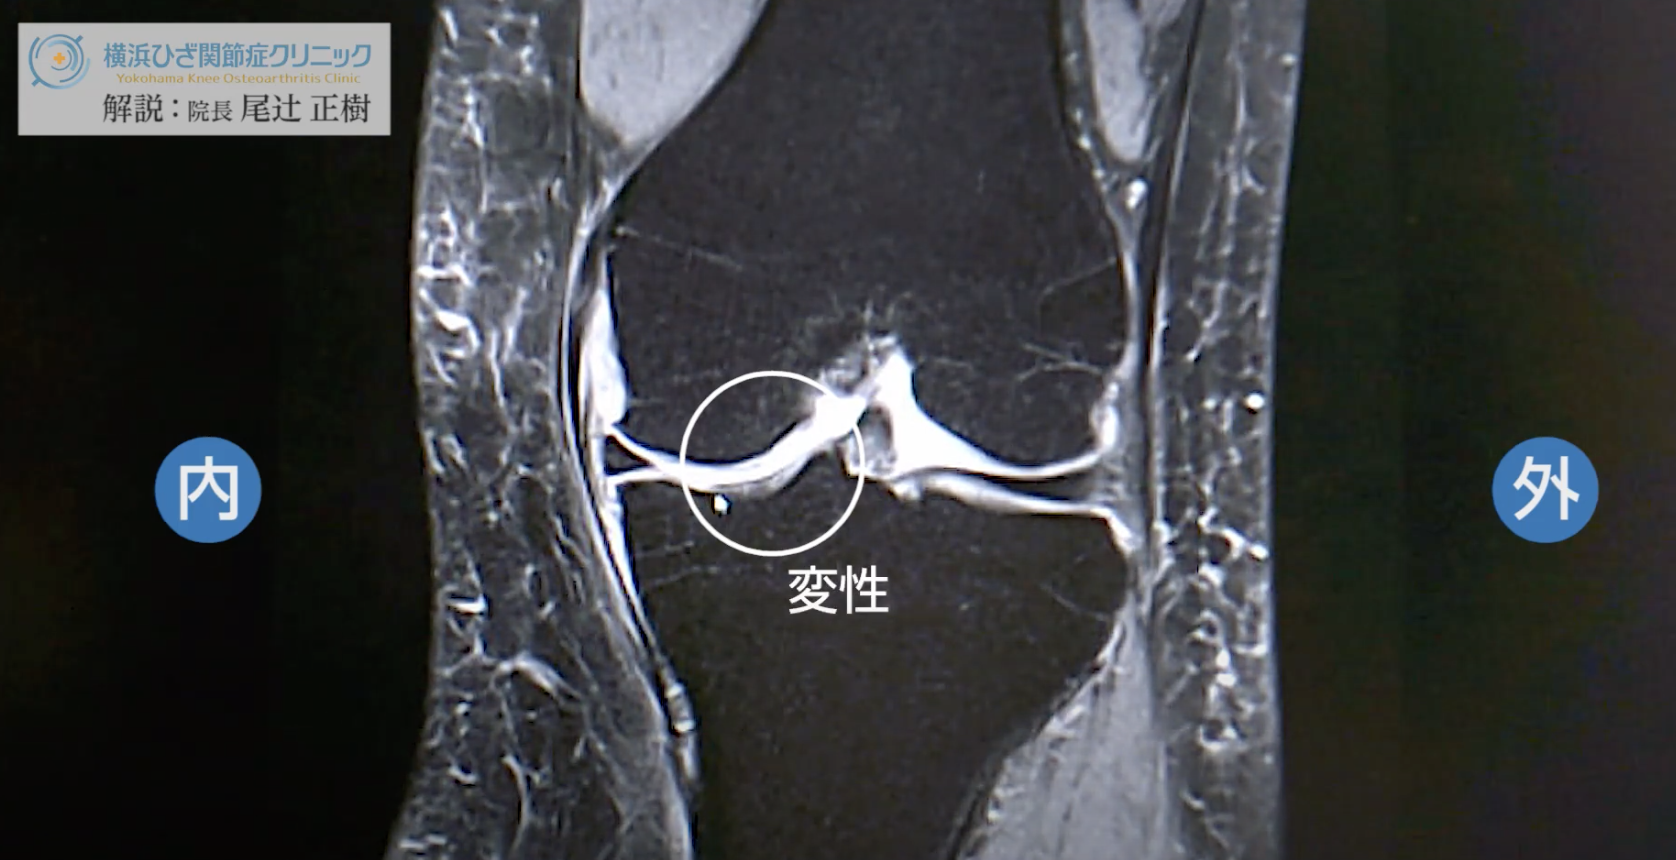 膝のMRIでわかること【半月板損傷】Dr. 尾辻の動画解説が好評